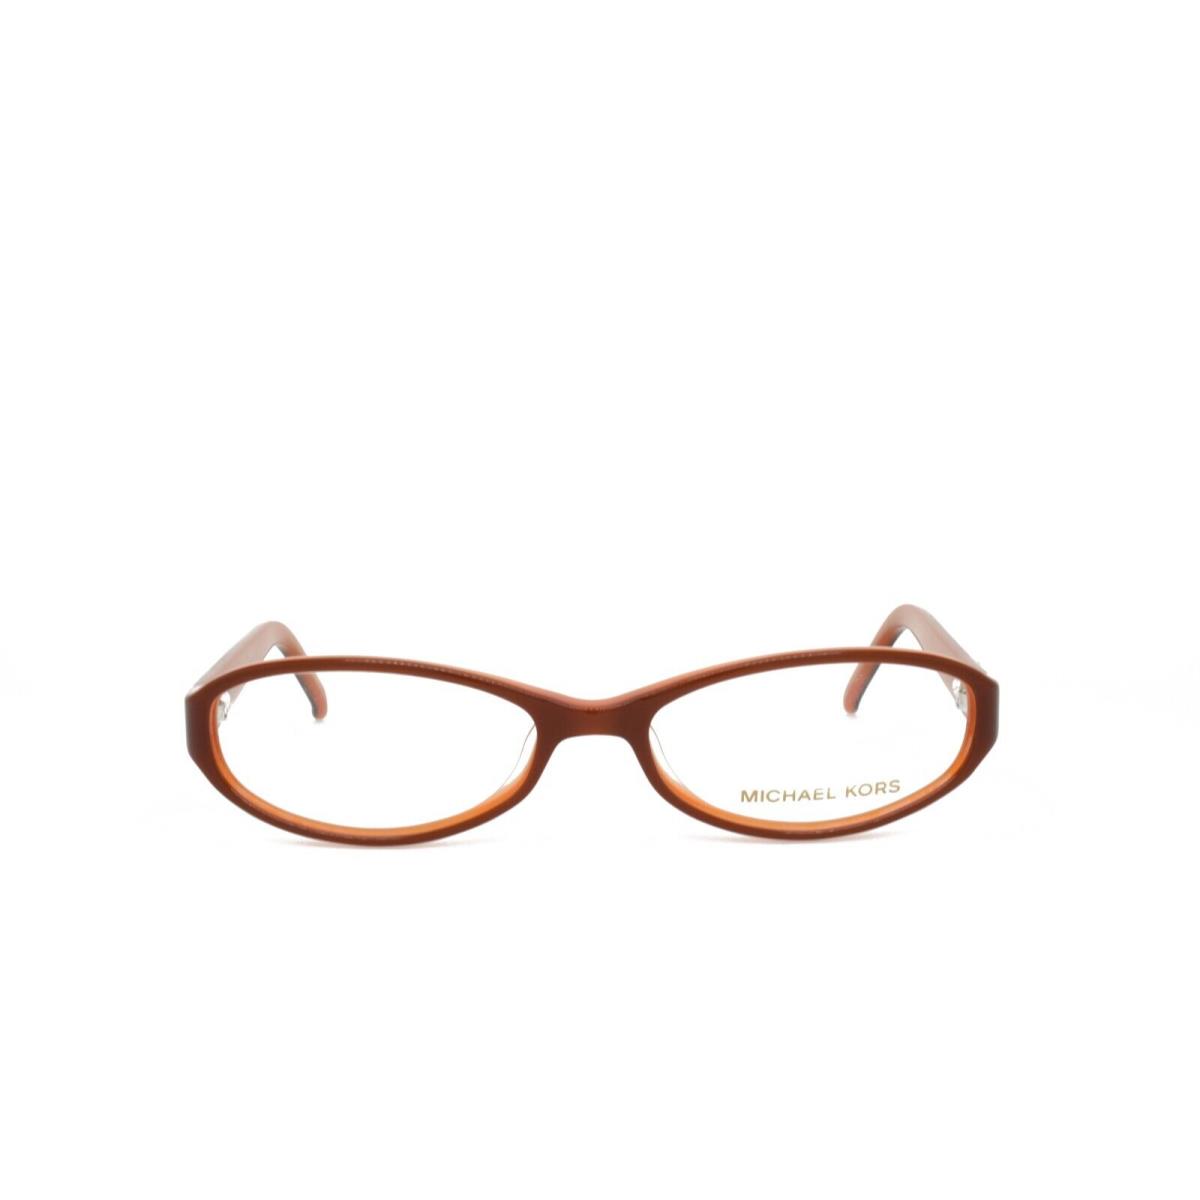 Michael Kors 2662 611 52-16-135 Brown Orange Eyeglasses Frames